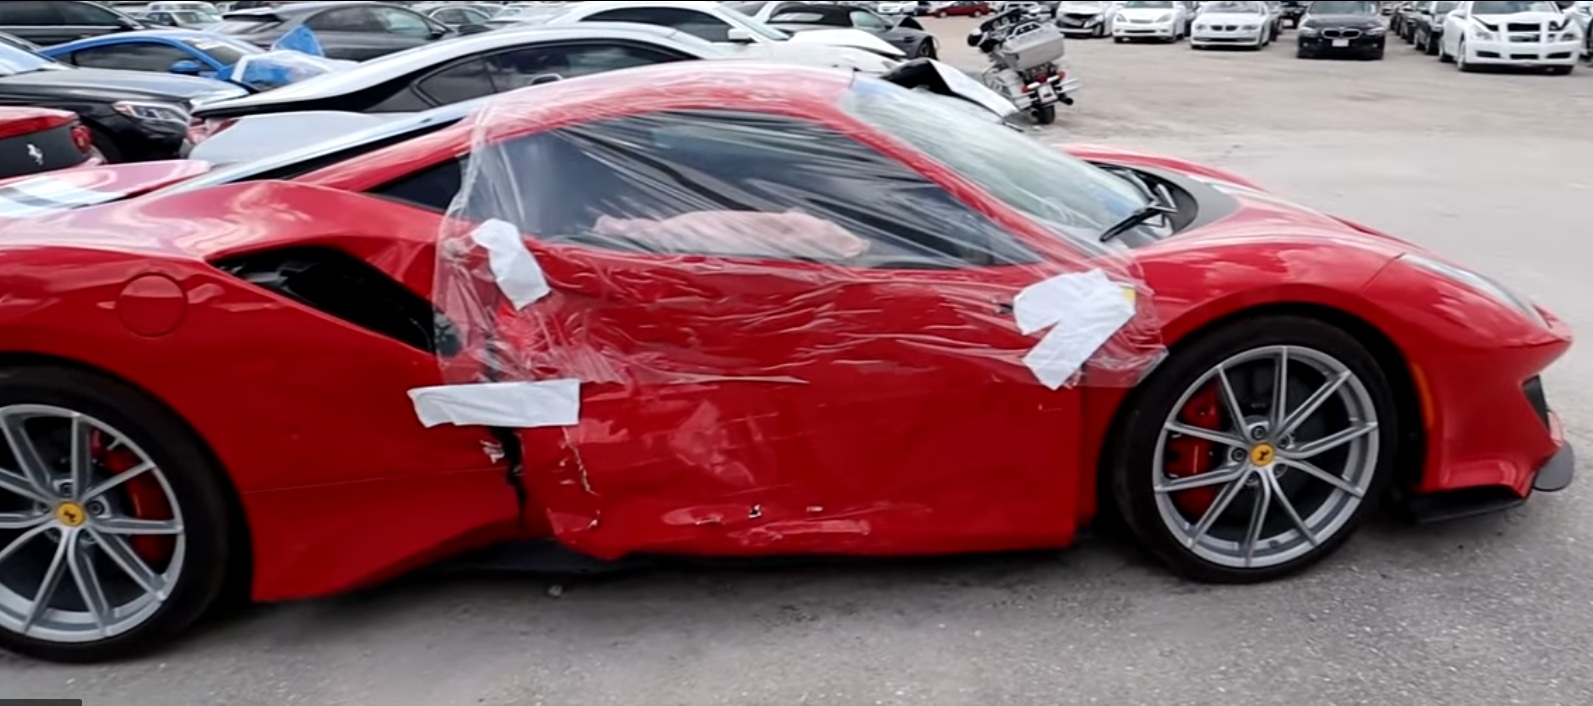 Новейший суперкар Ferrari разбили сразу после покупки